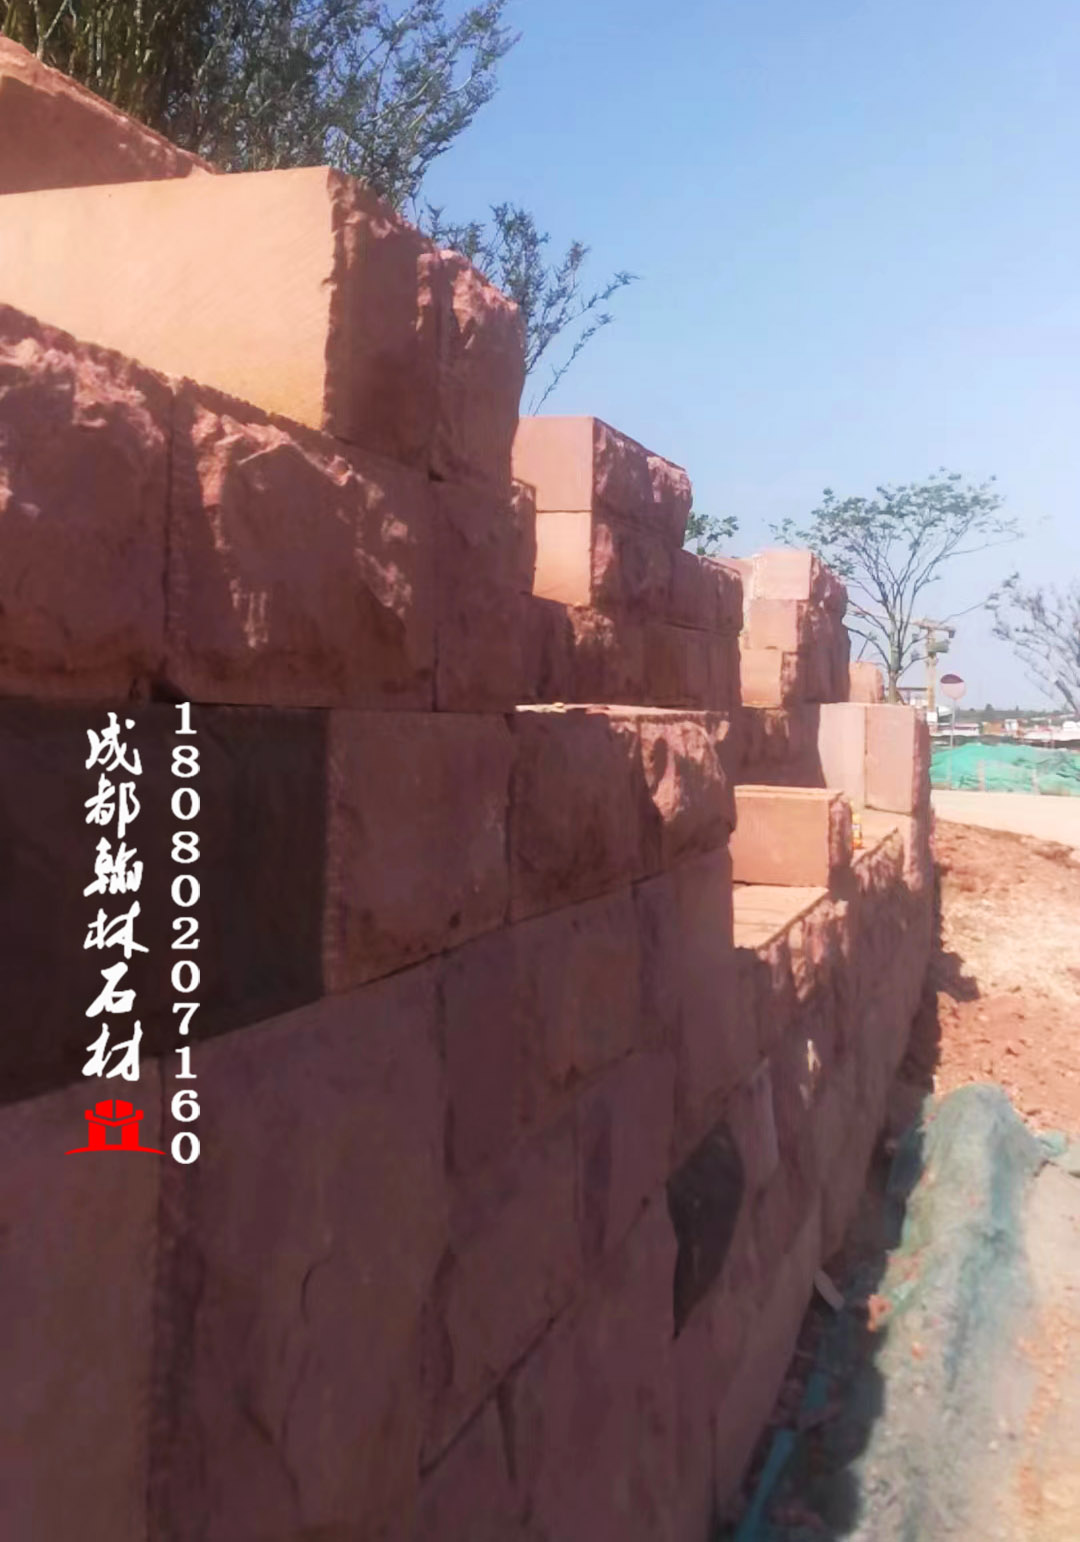 四川成都天府新区项目红砂岩堡坎石自然面景墙 